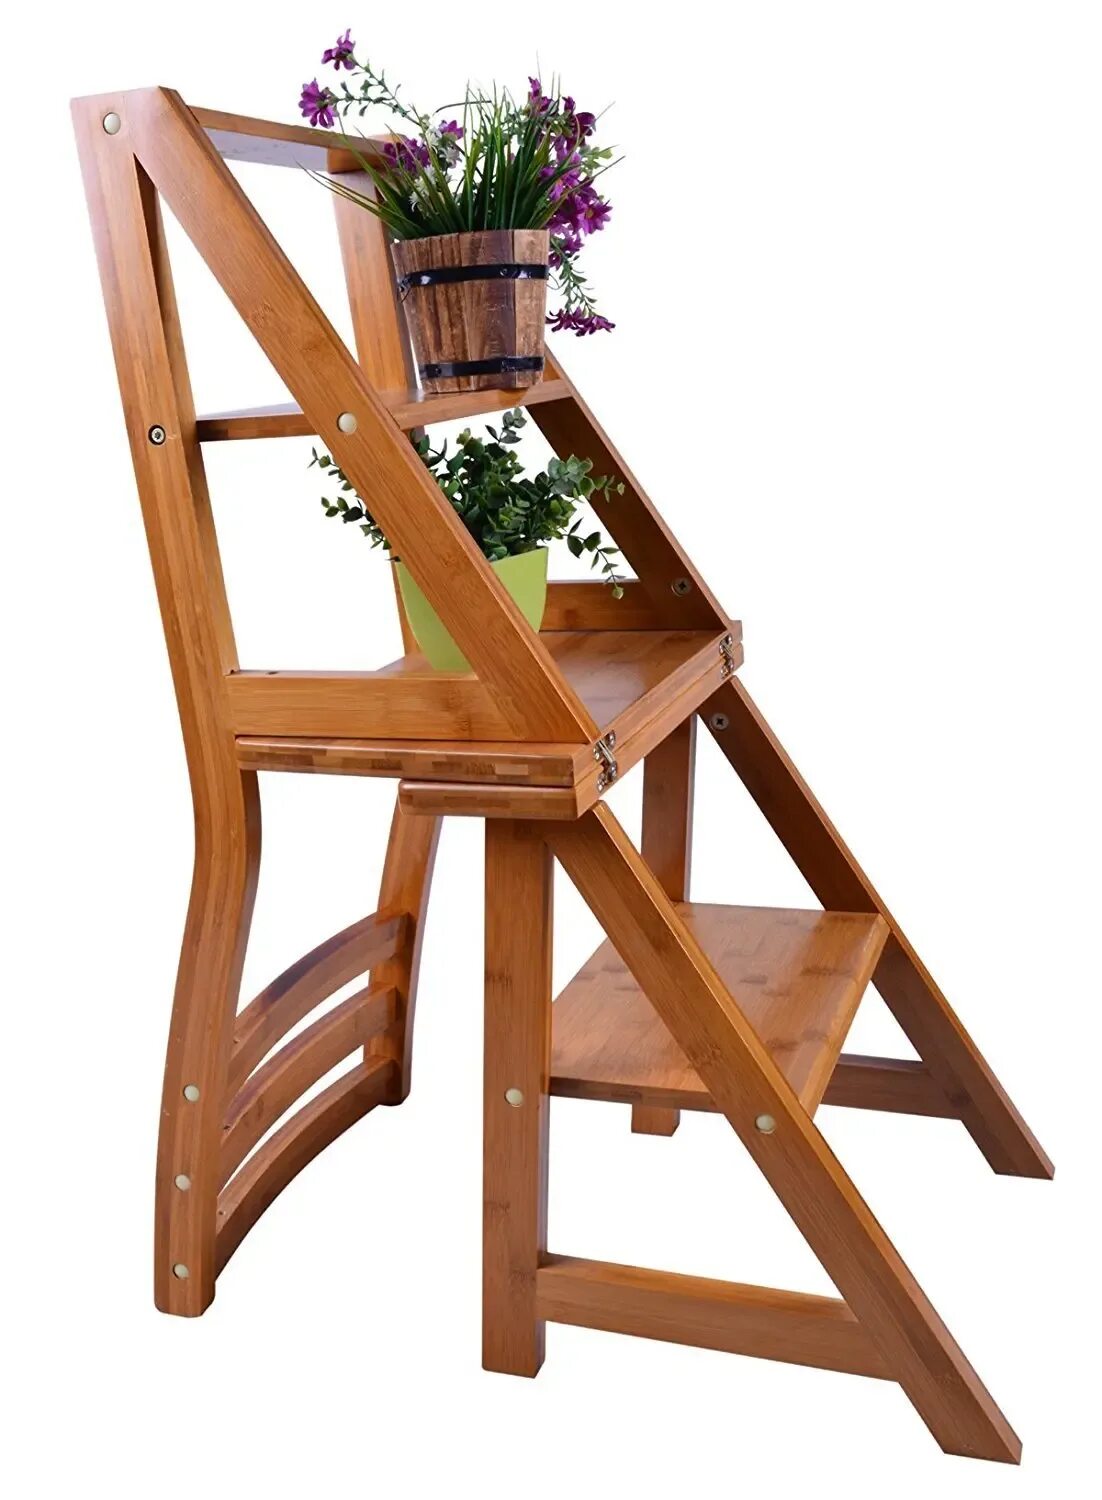 Стул лестница купить. Стул стремянка Stepladder Chair. Валберис стремянка - табурет трансформер. Стул-стремянка трансформер икеа. Стул стремянка раскладной деревянный.